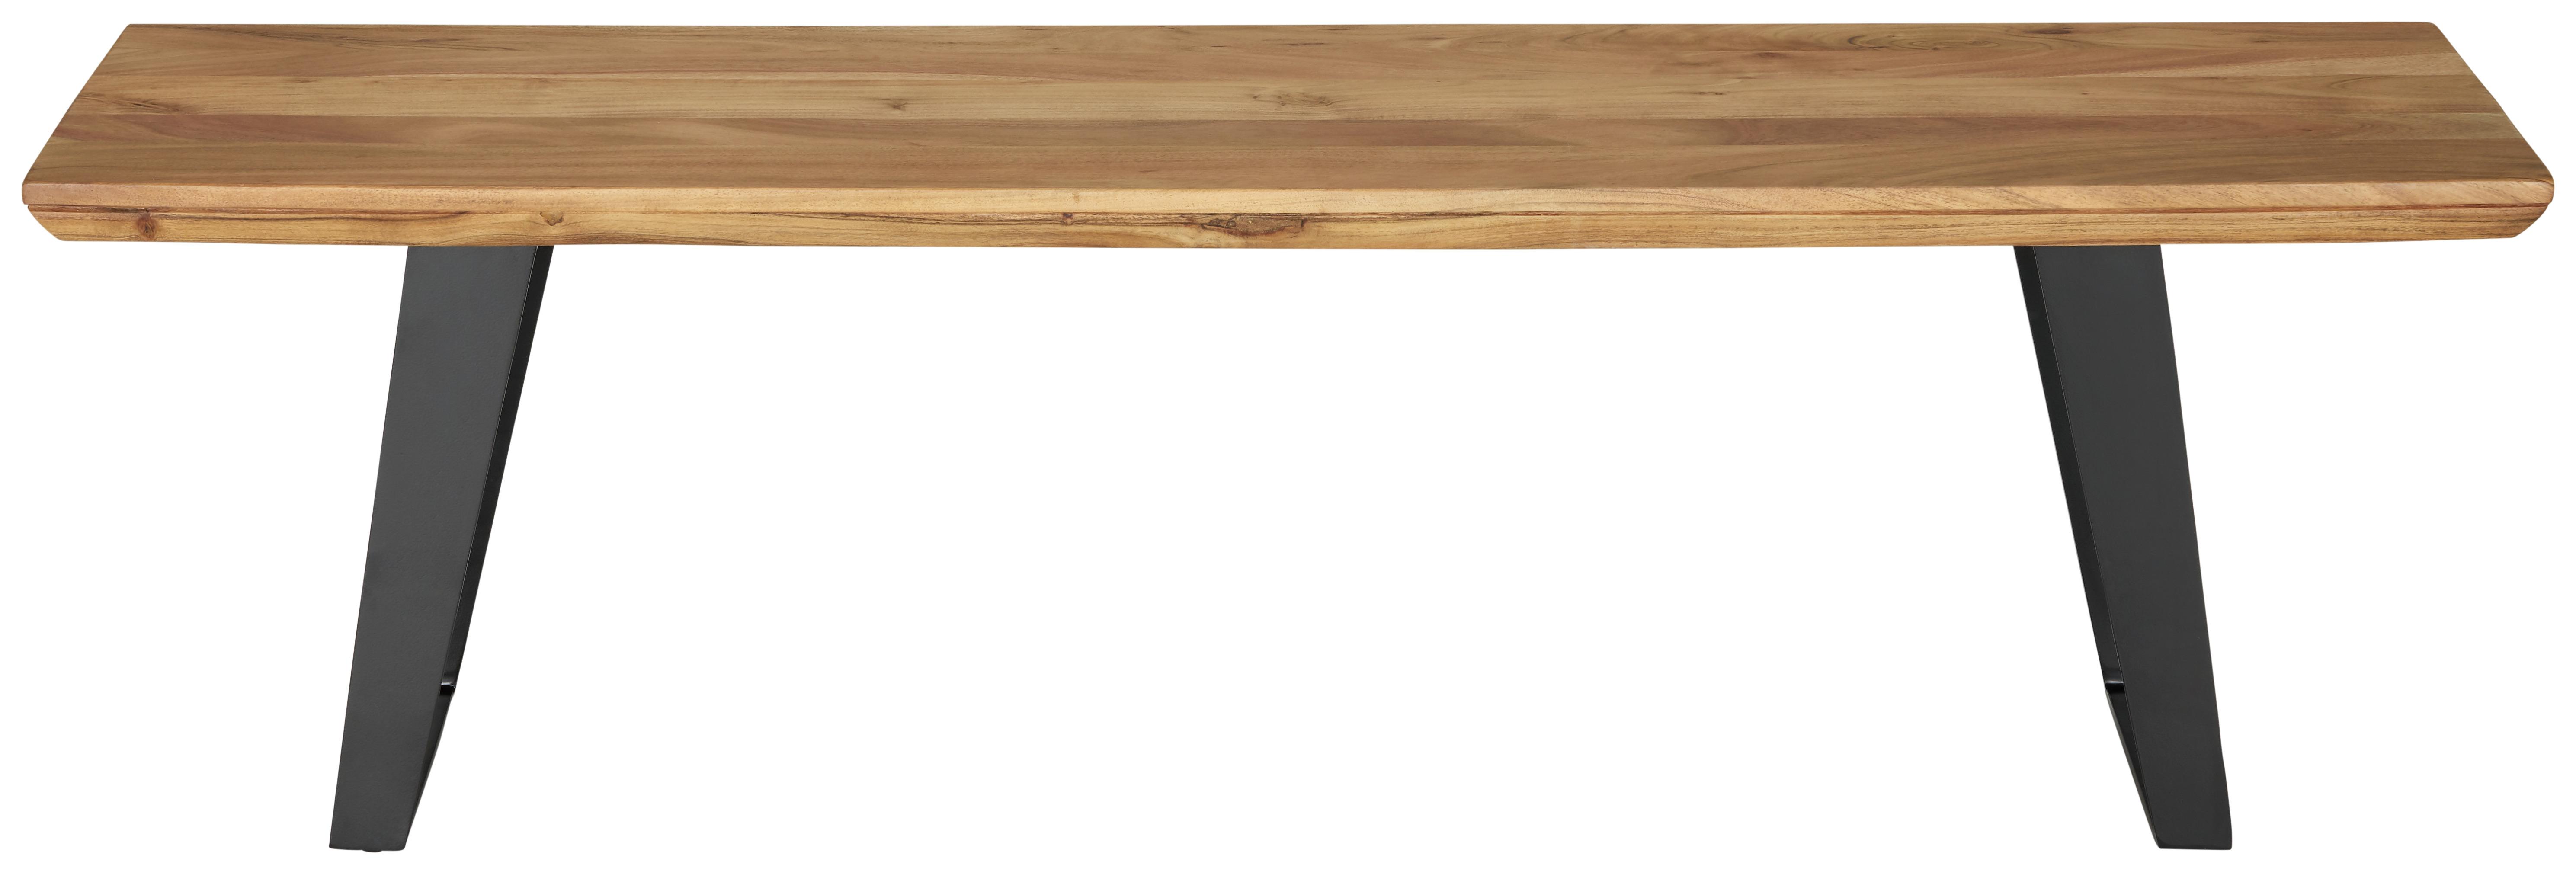 Dřevěná Jídelní Lavice Herkules - černá/barvy akácie, Lifestyle, kov/dřevo (150/45/38cm) - Zandiara